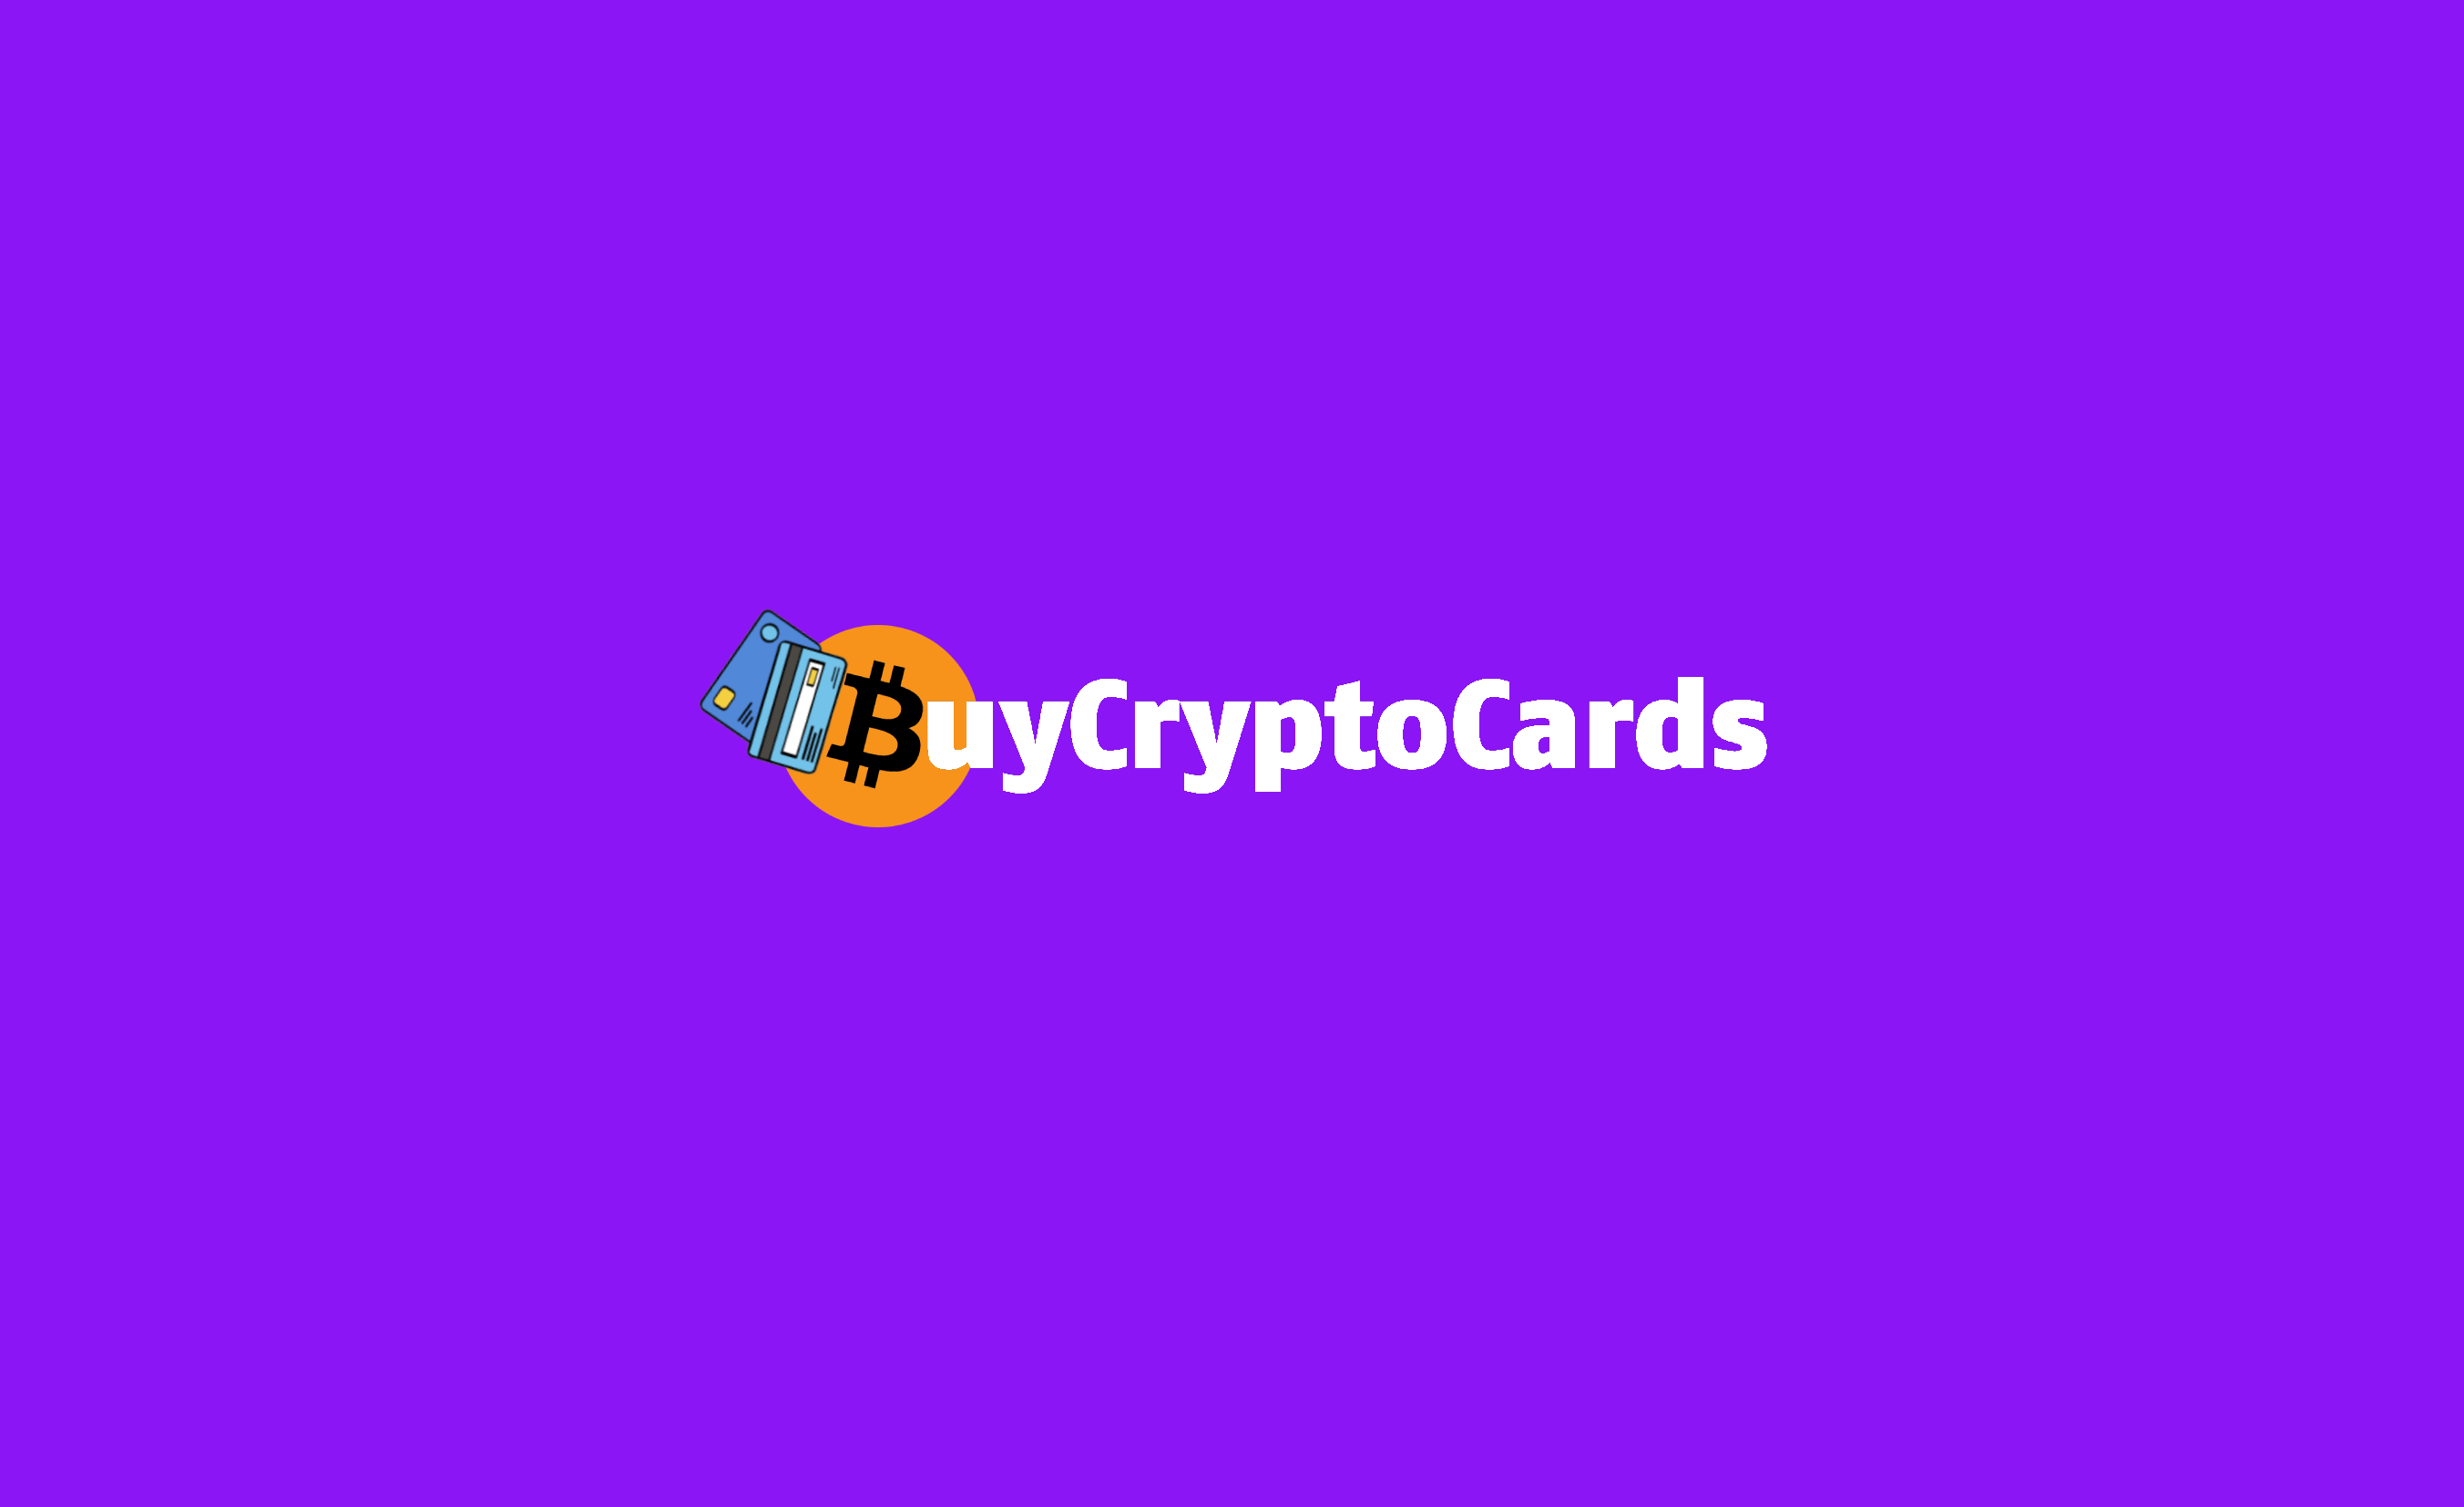 (c) Buycryptocards.com